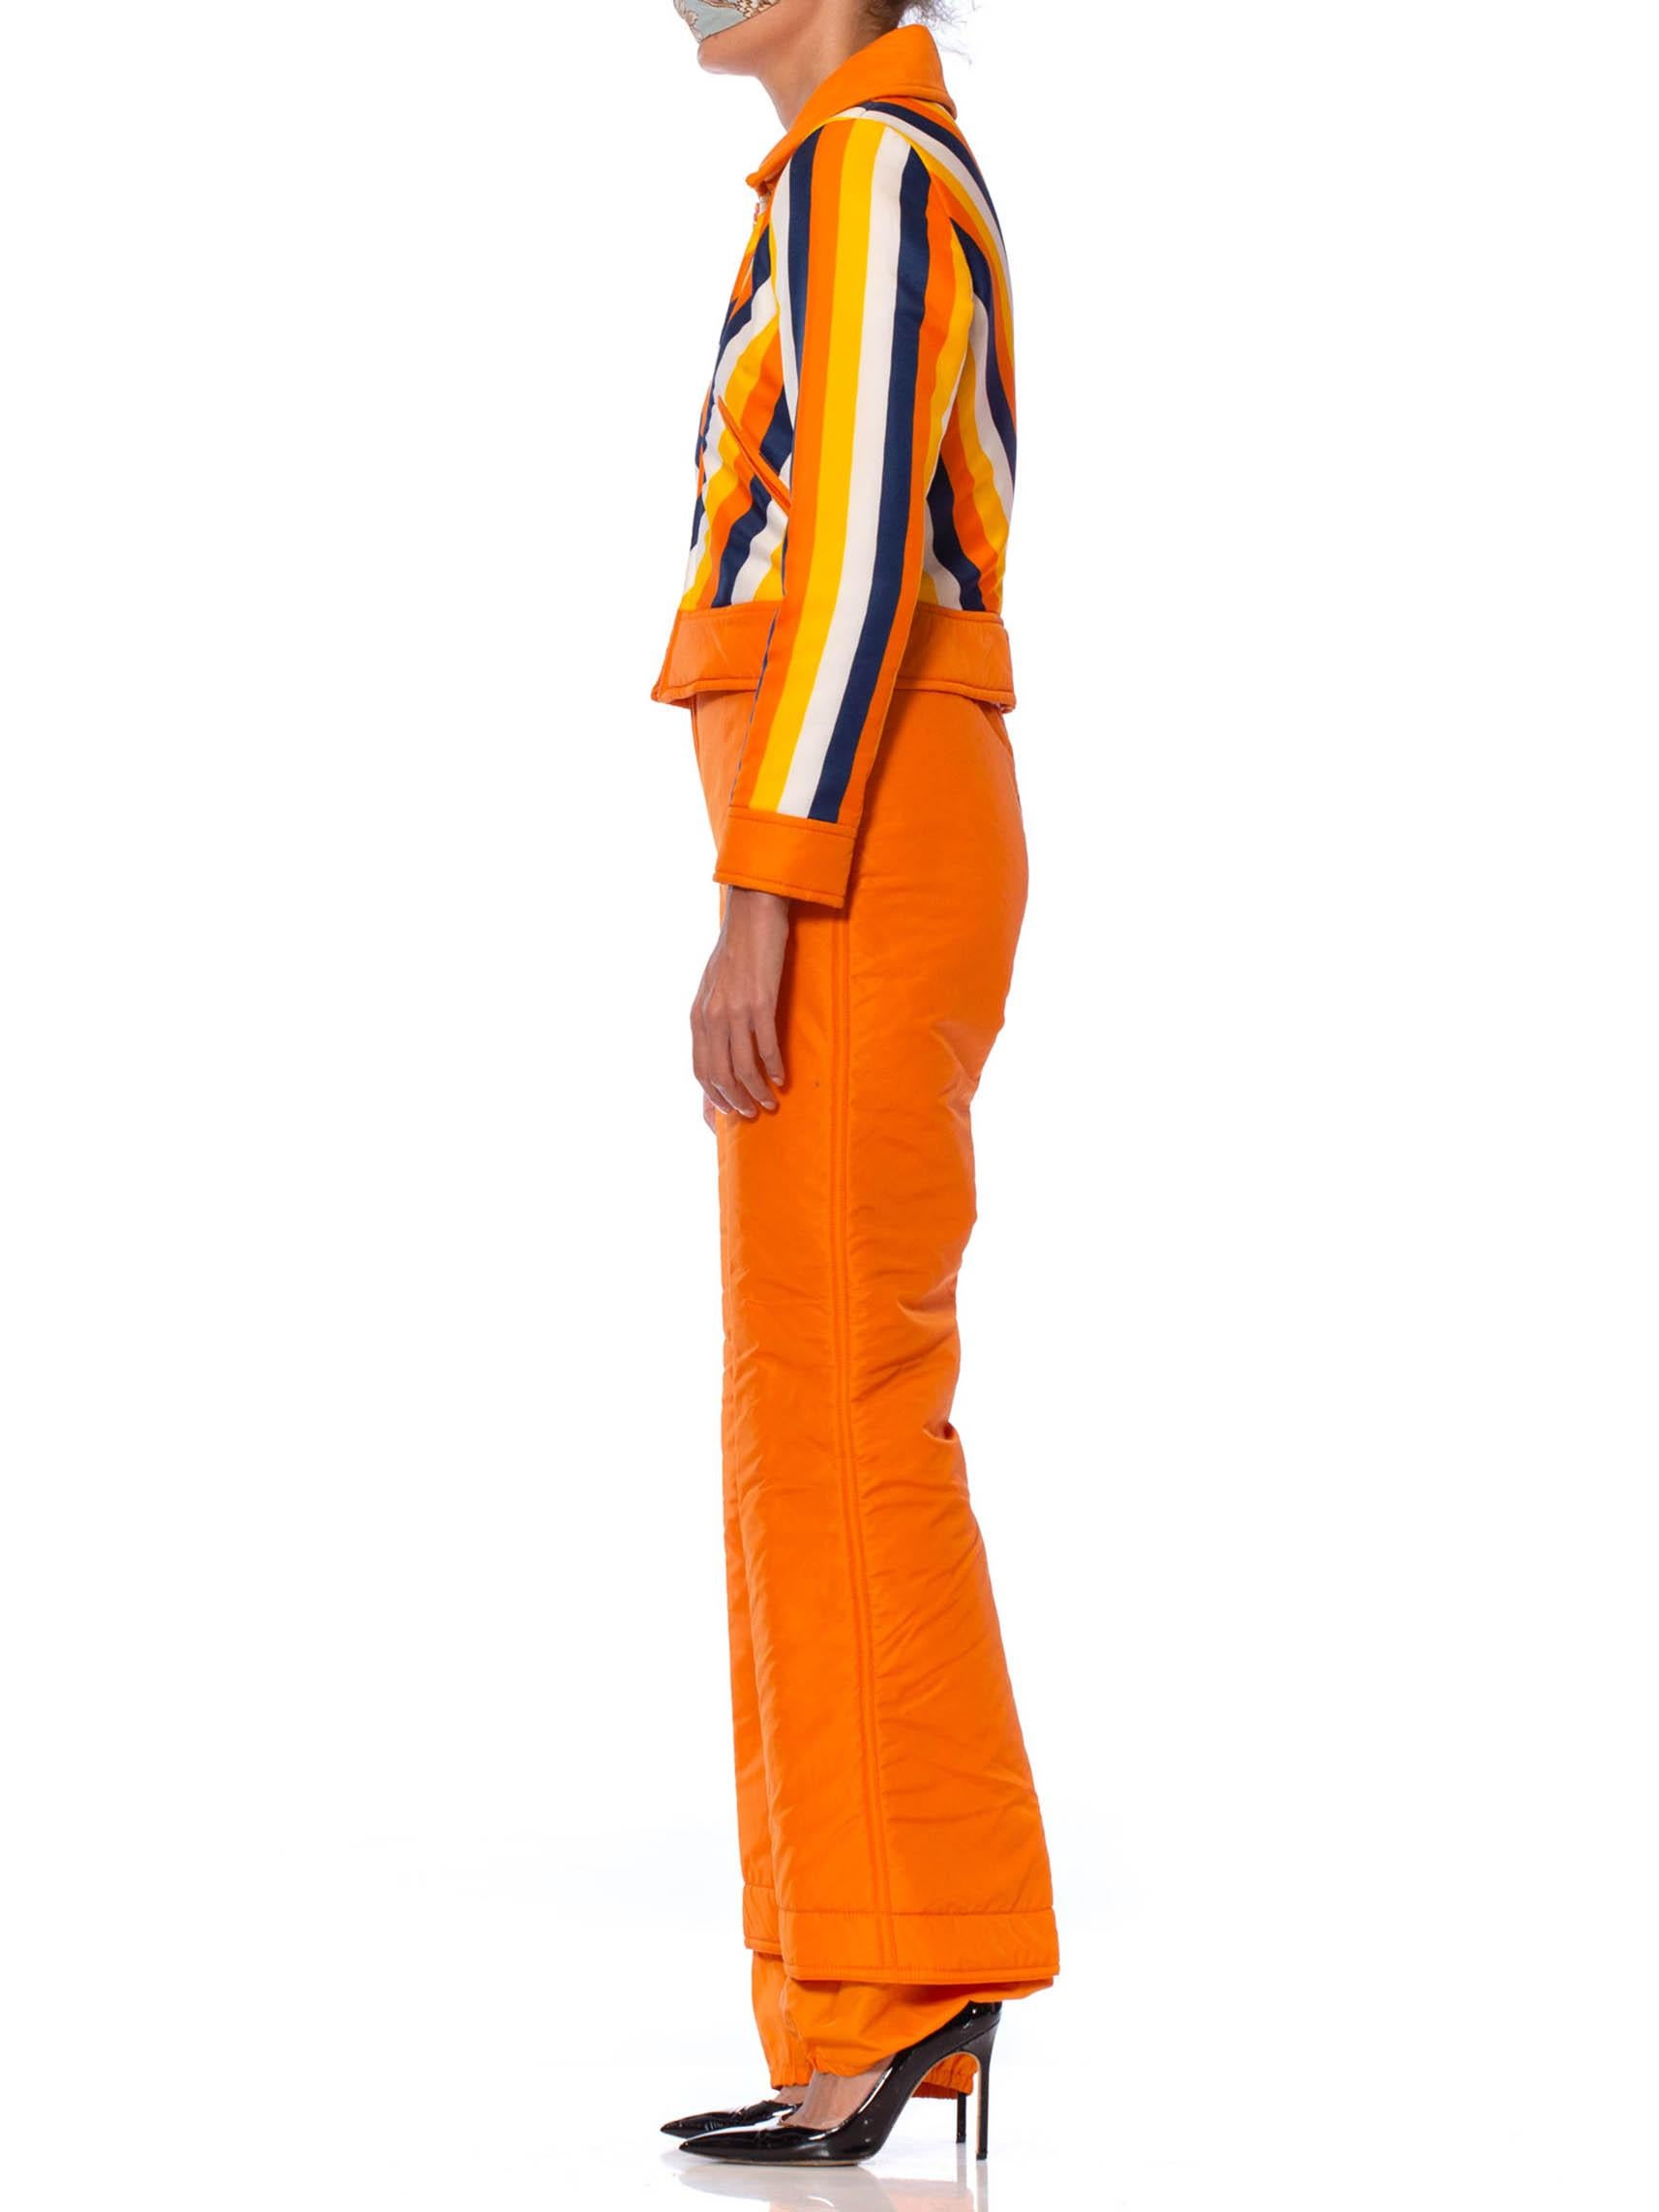 orange leisure suit